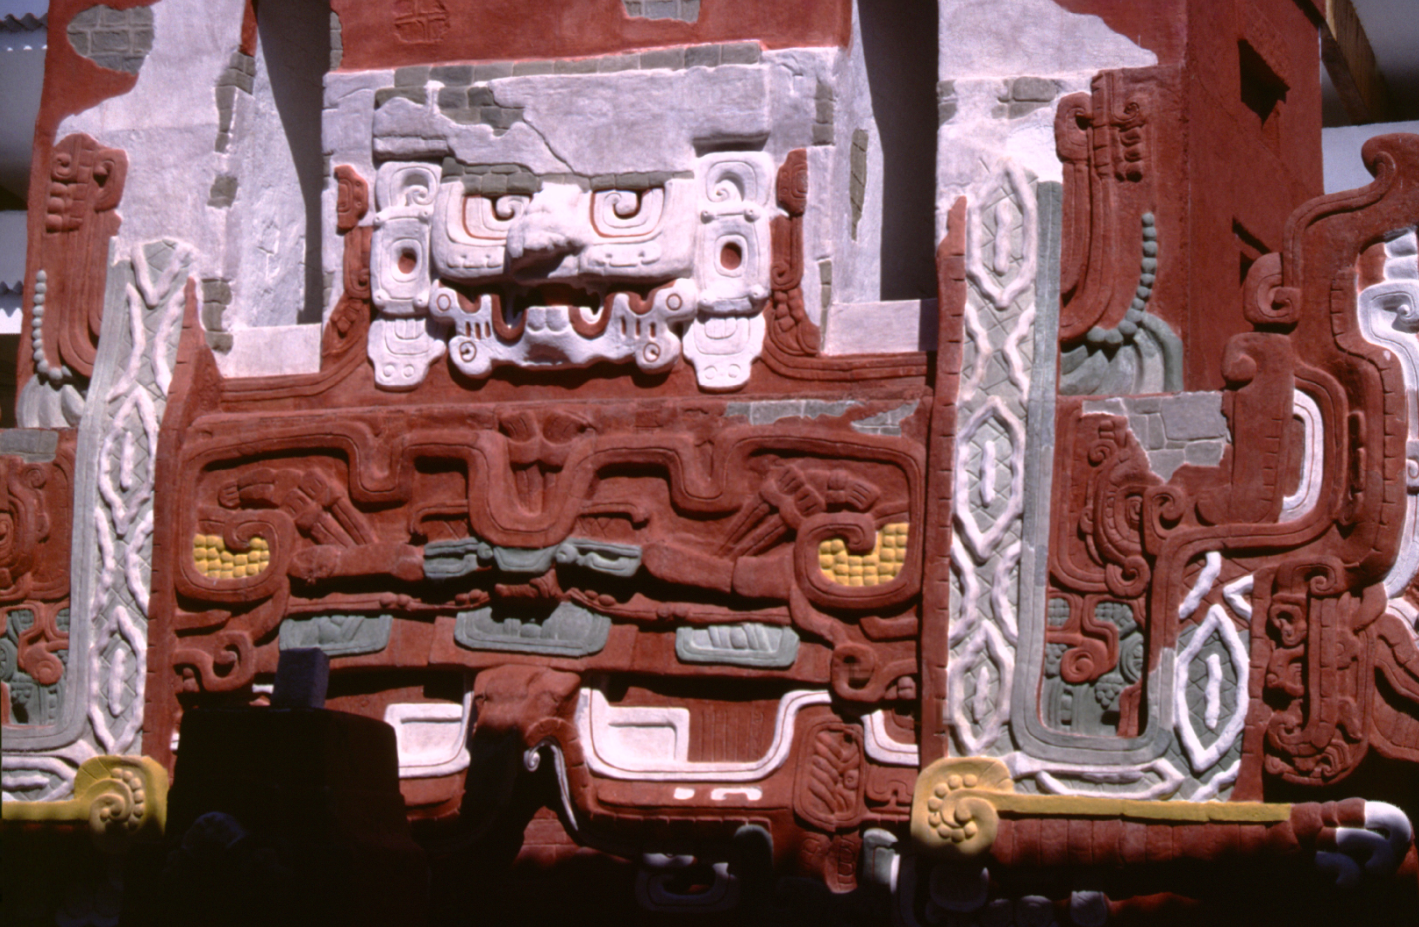 L’extraordinaire temple maya reconstitué, grandeur nature, dans le musée jouxtant les ruines de la ville. Un chef d’œuvre.